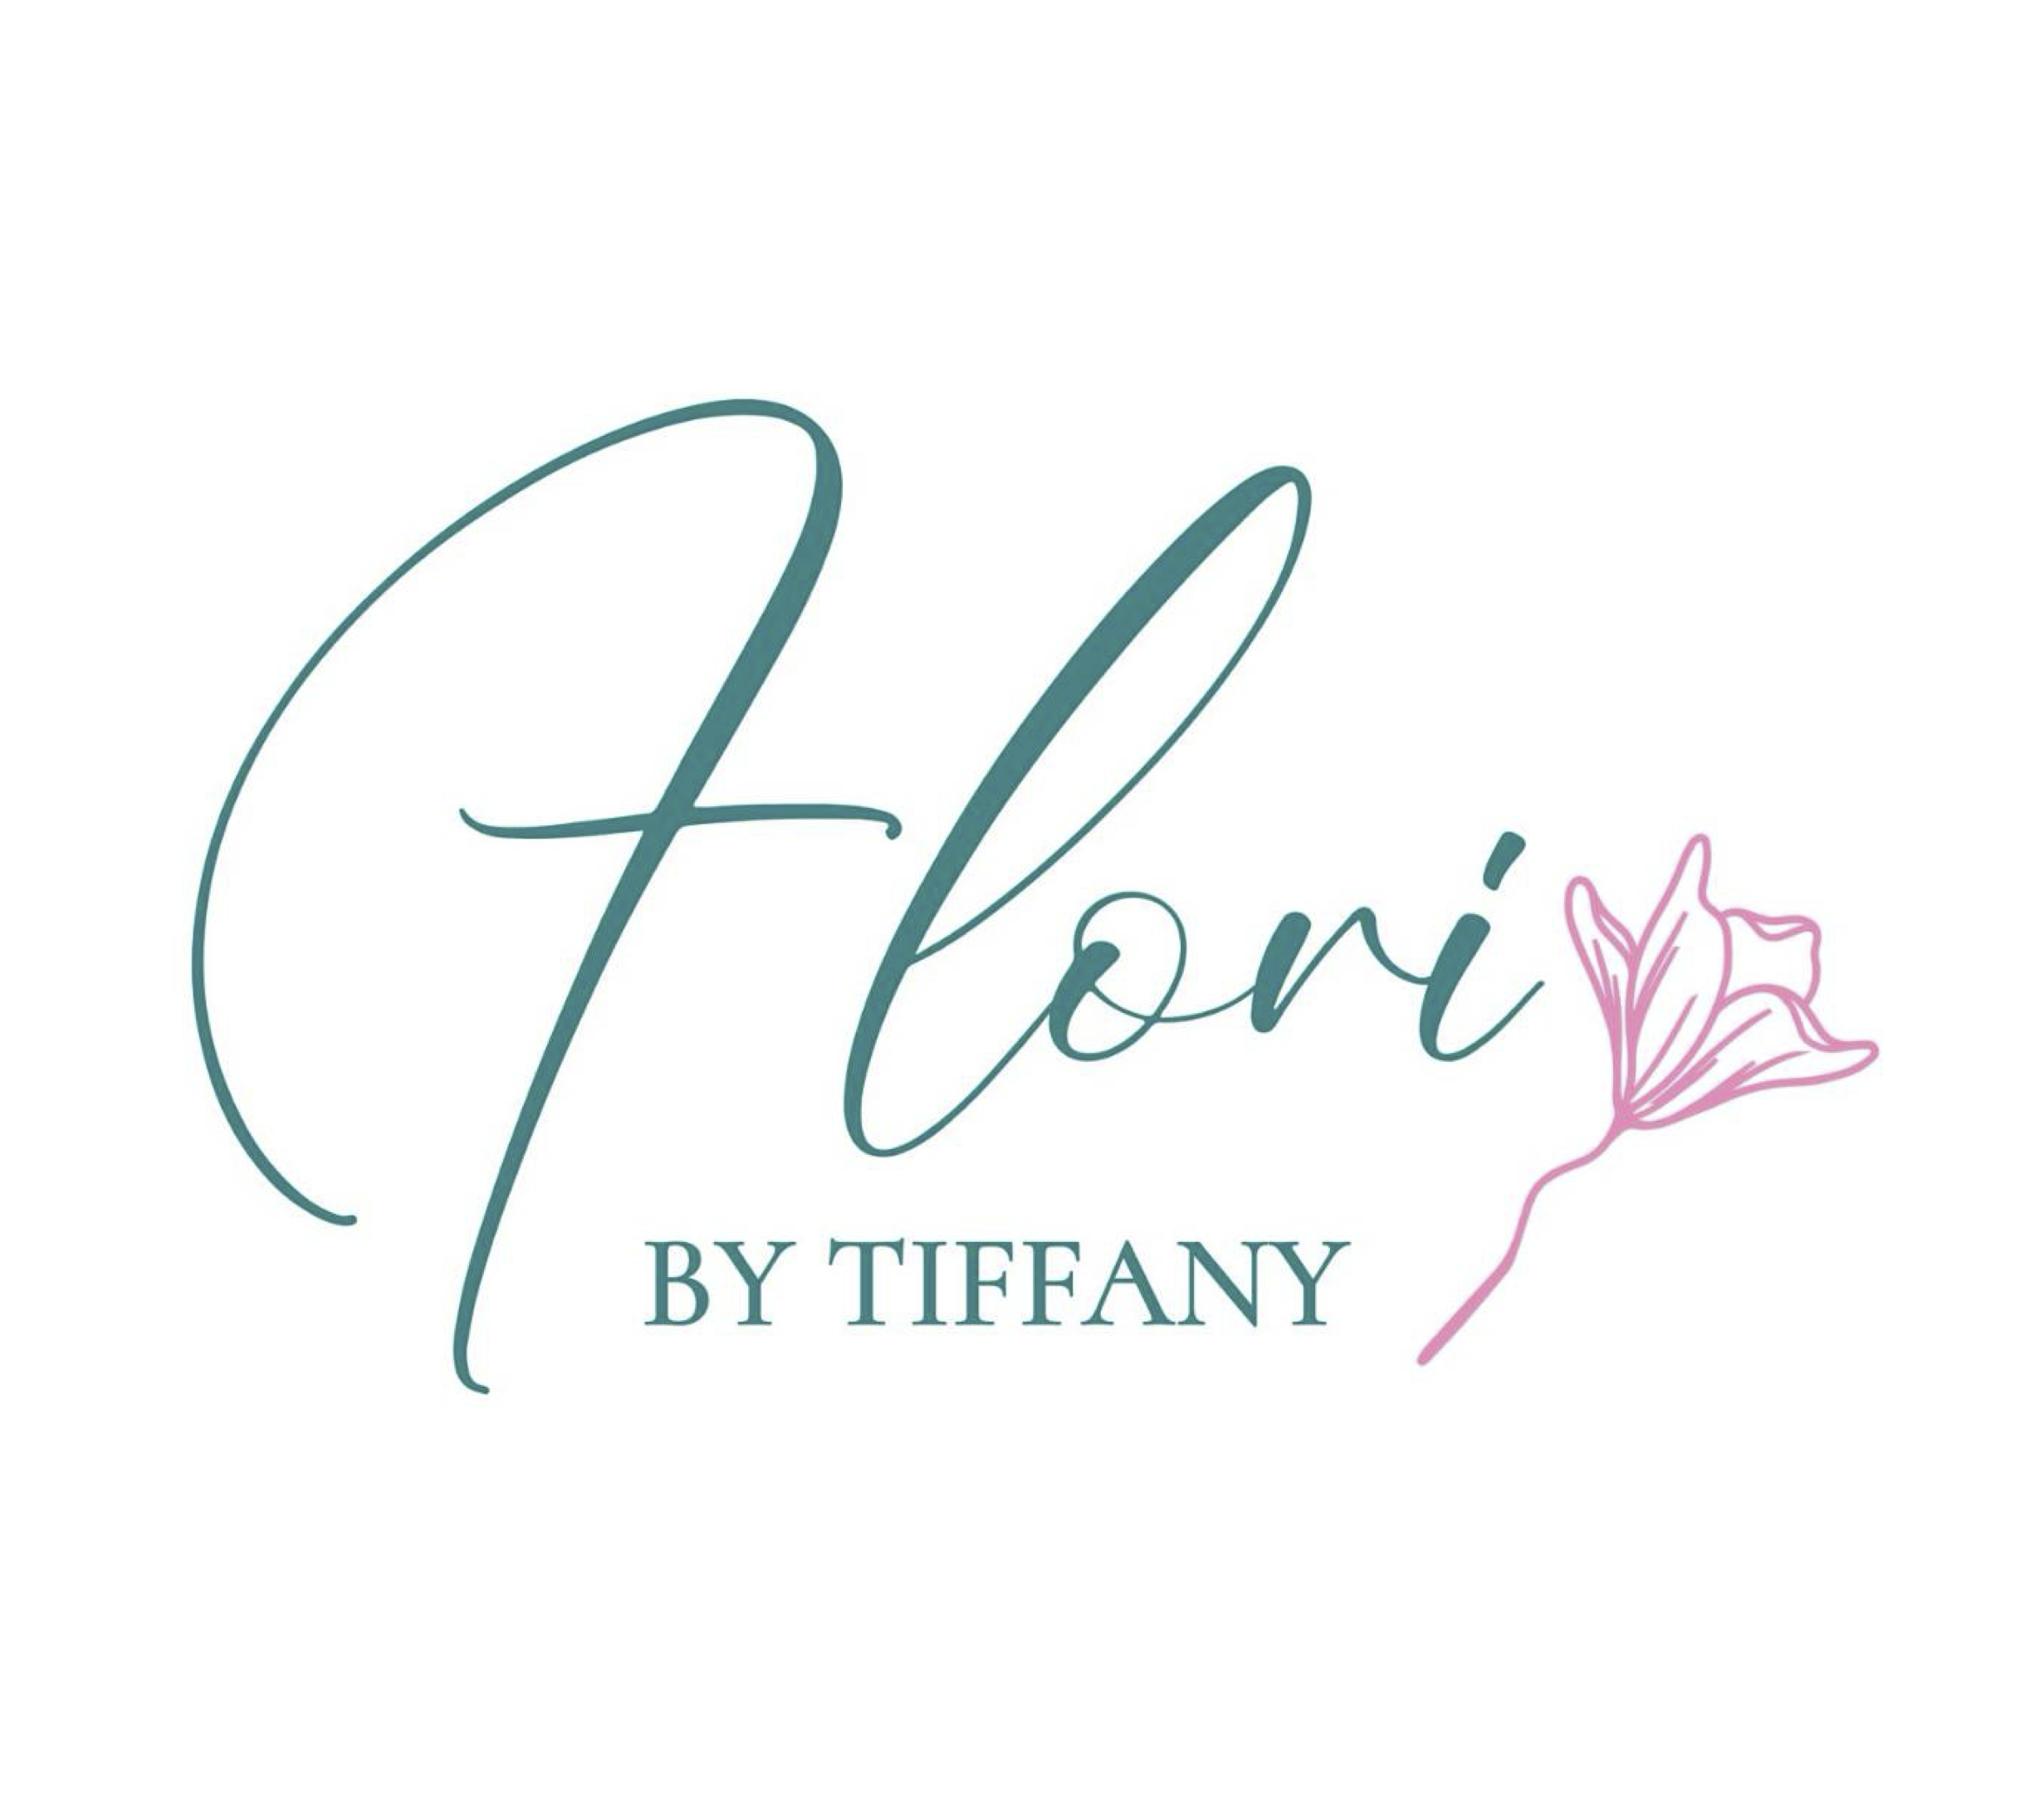 Flori by Tiffany logo